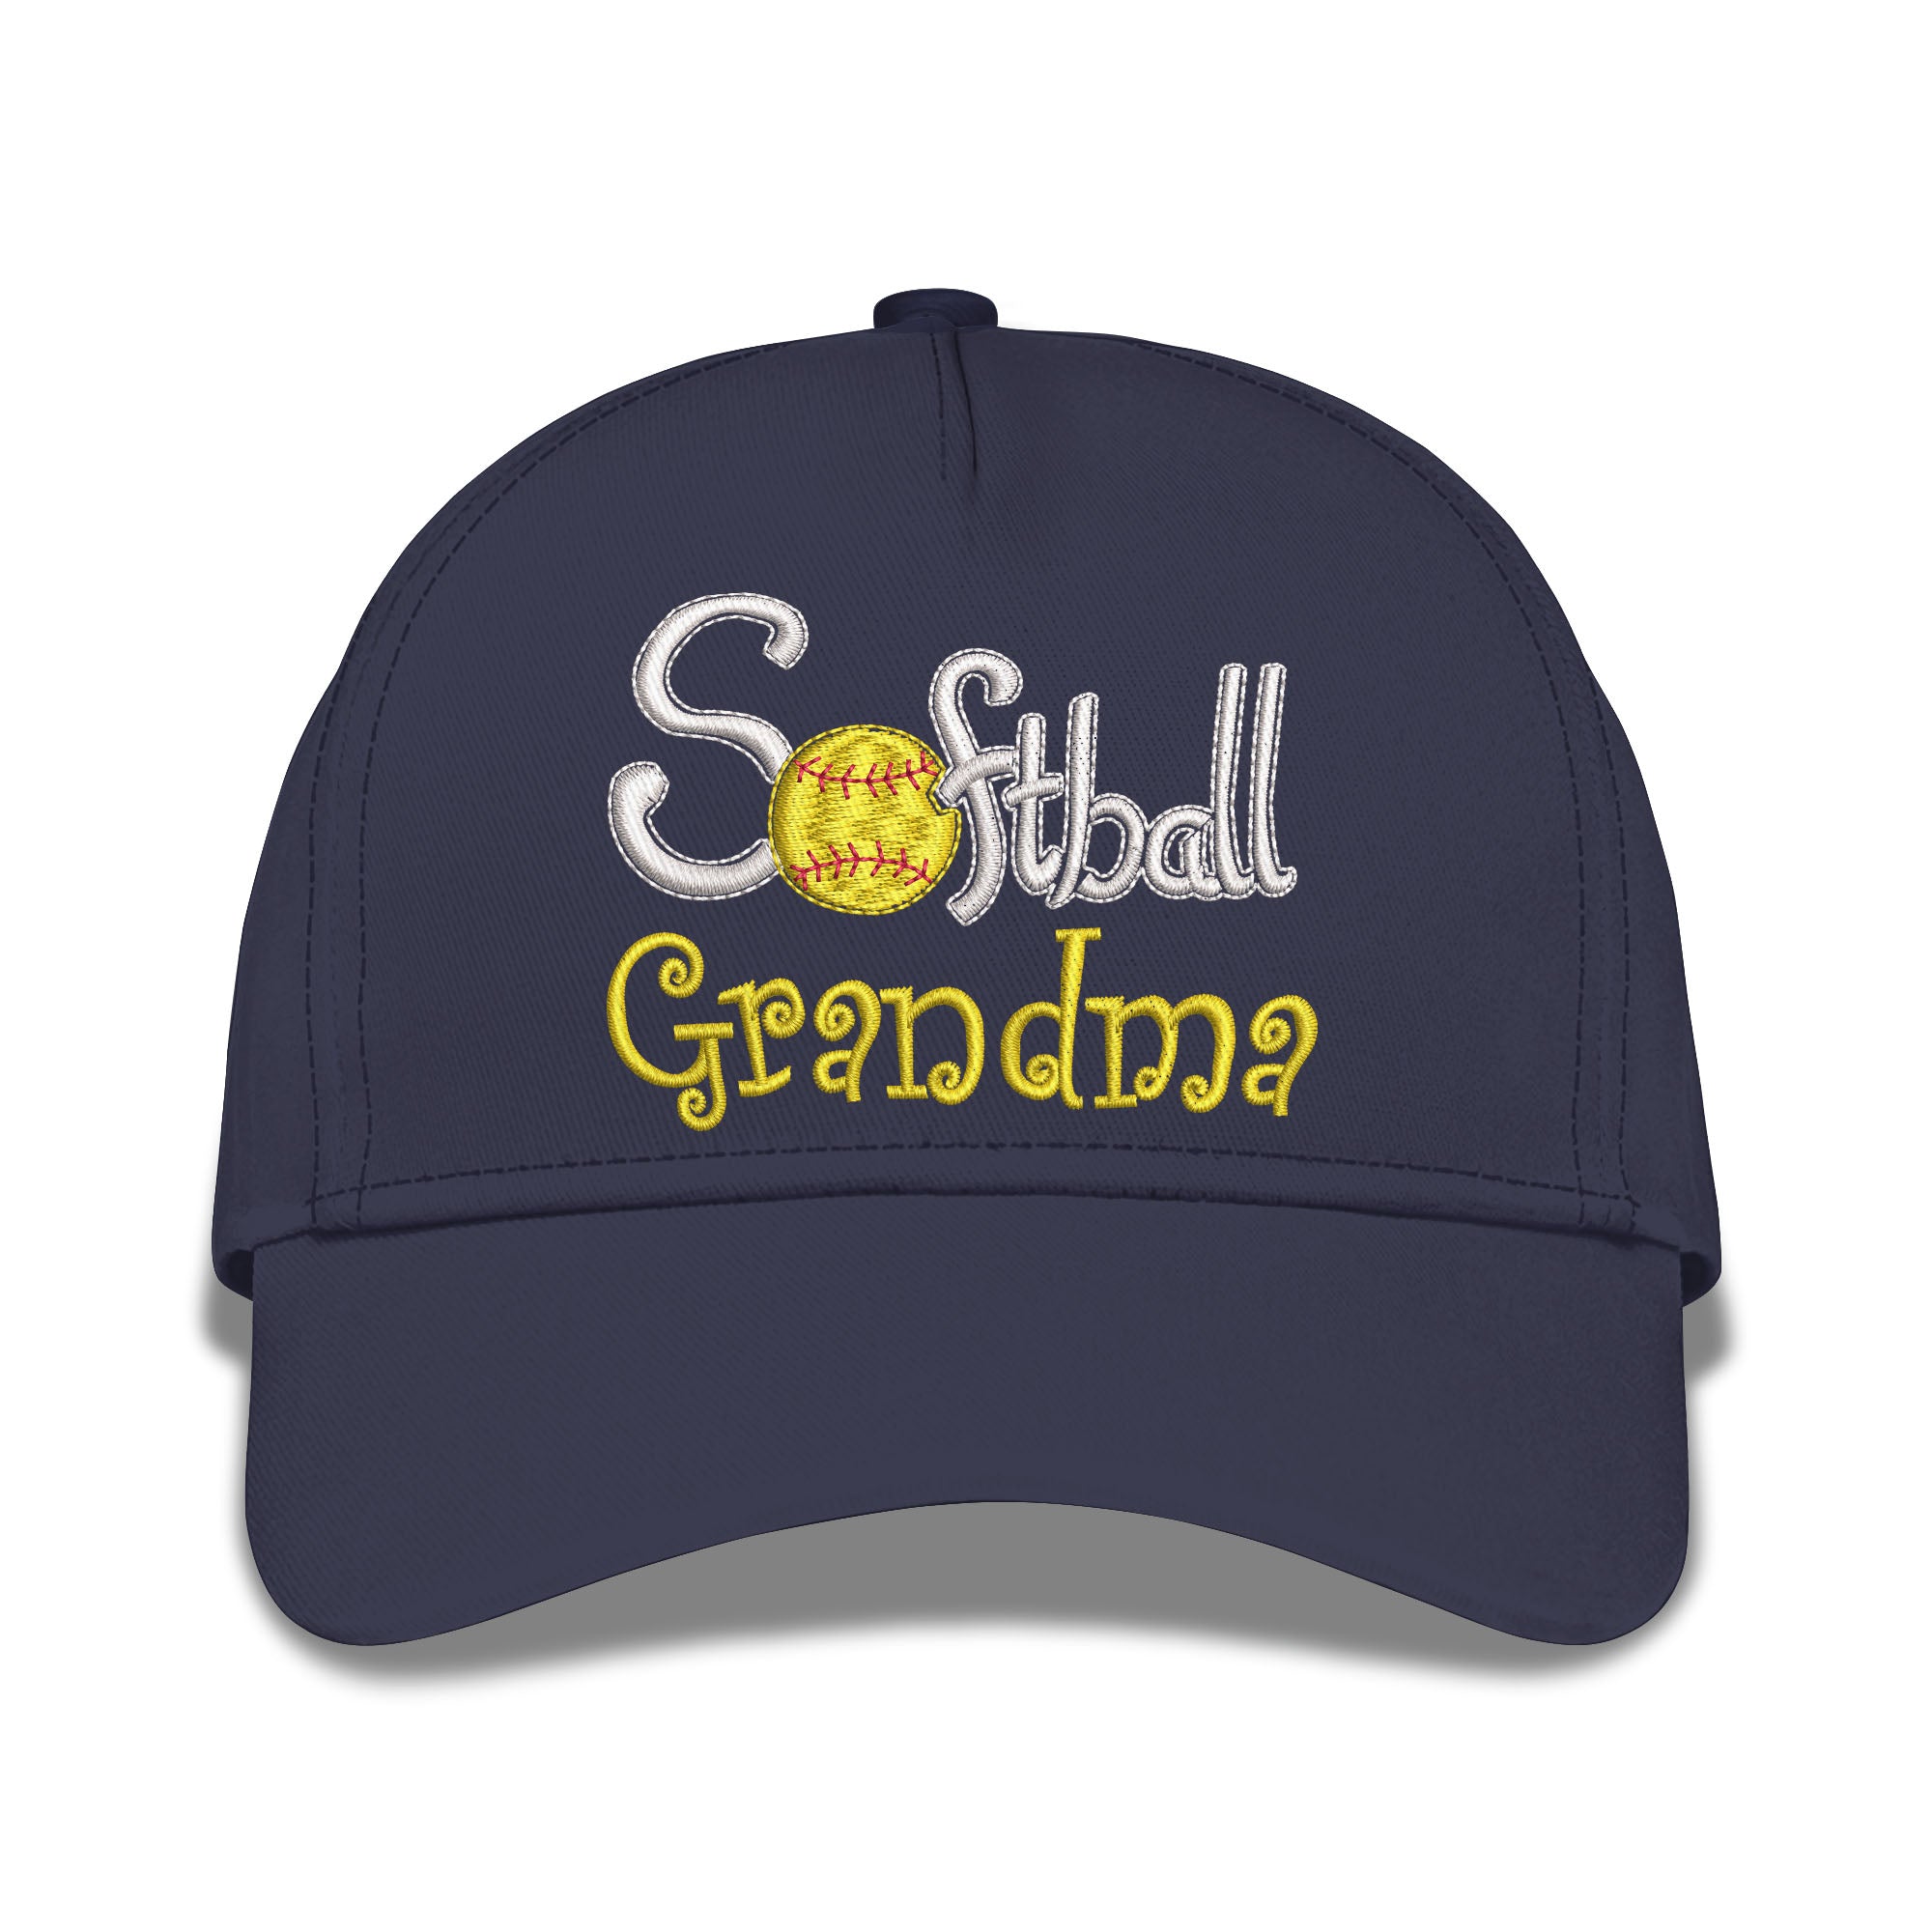 Softball Grandma Embroidered Baseball Caps